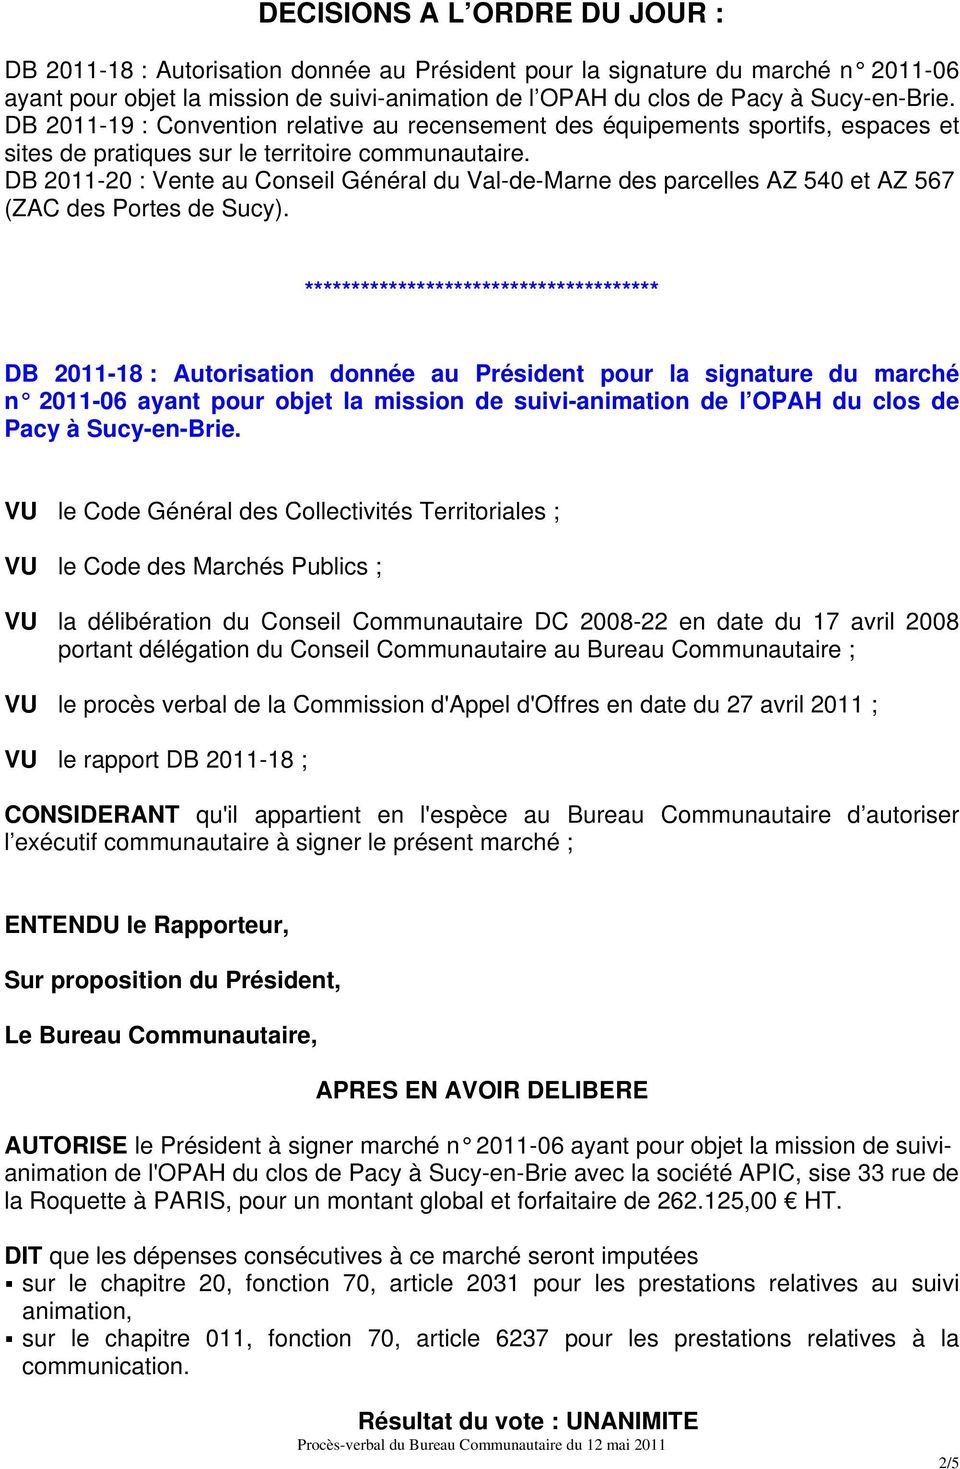 DB 2011-20 : Vente au Conseil Général du Val-de-Marne des parcelles AZ 540 et AZ 567 (ZAC des Portes de Sucy).